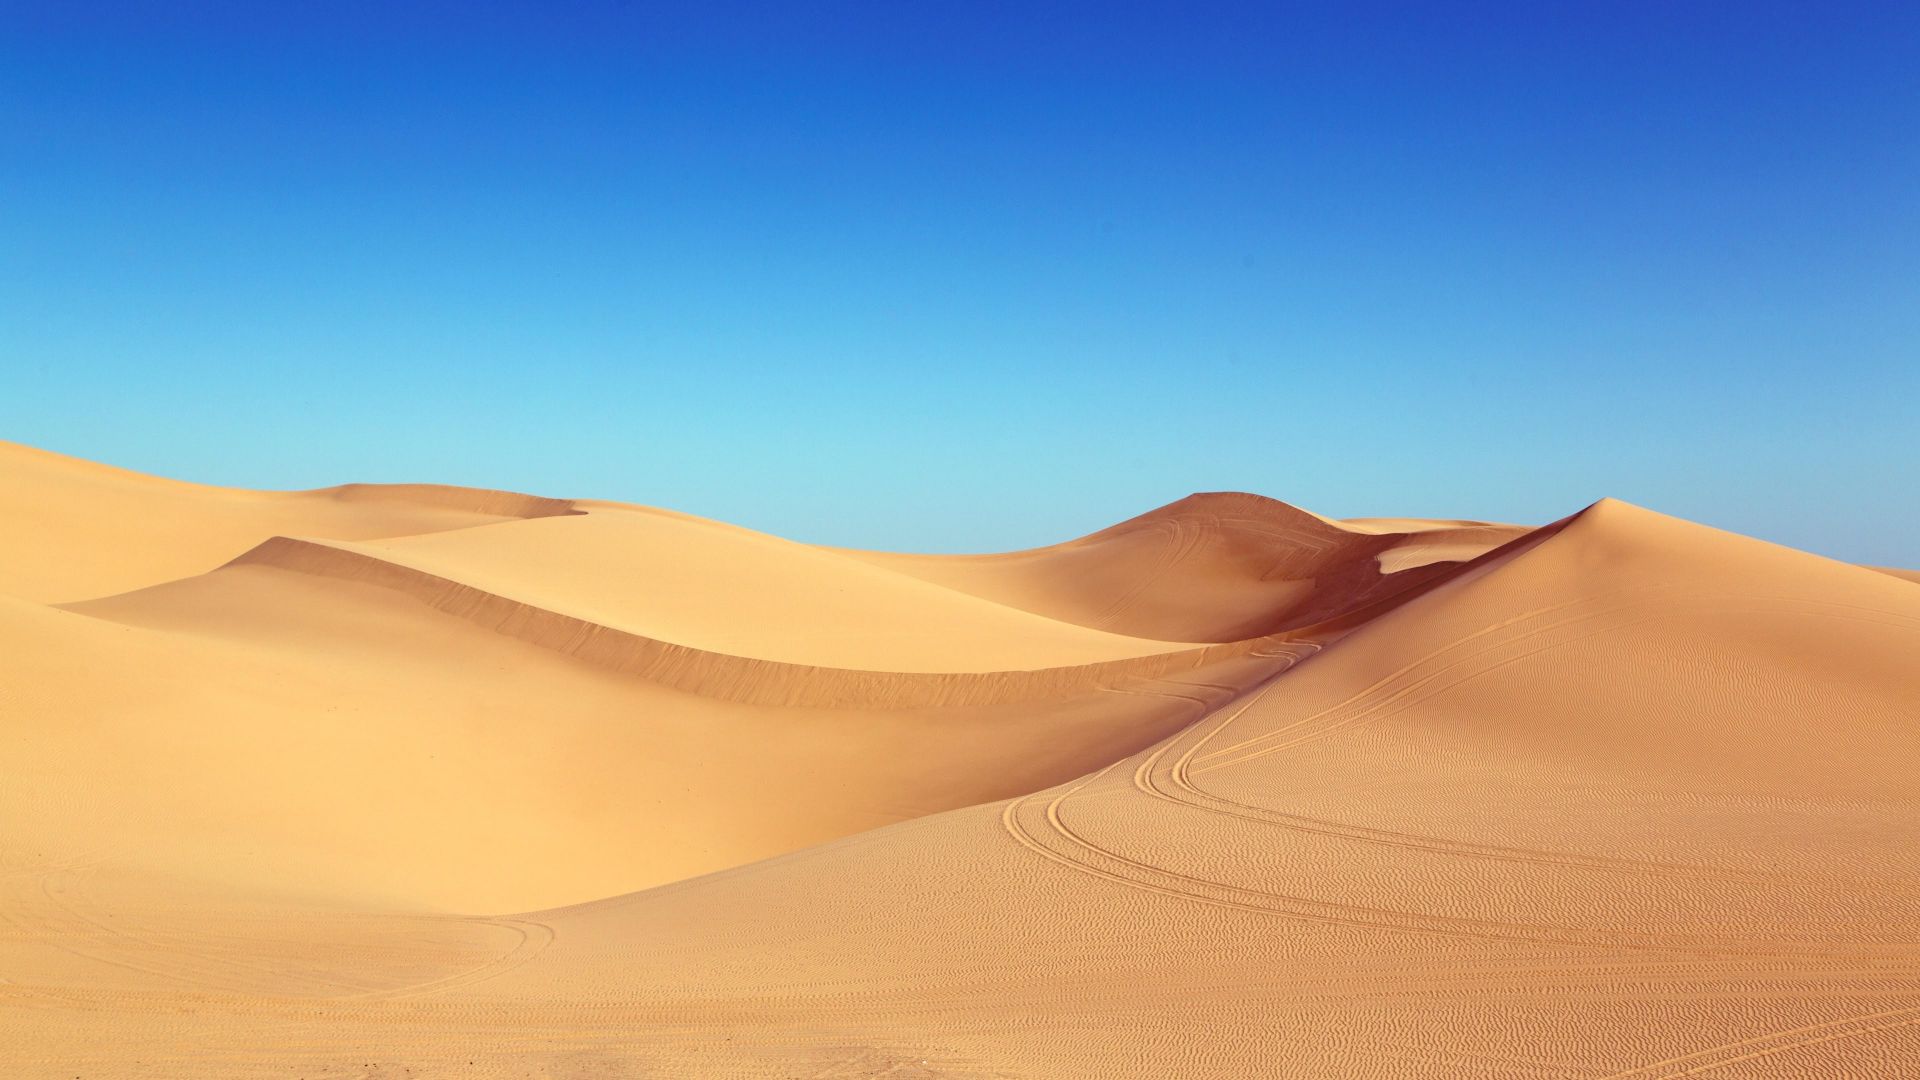 Wallpaper Blue sky and desert dunes